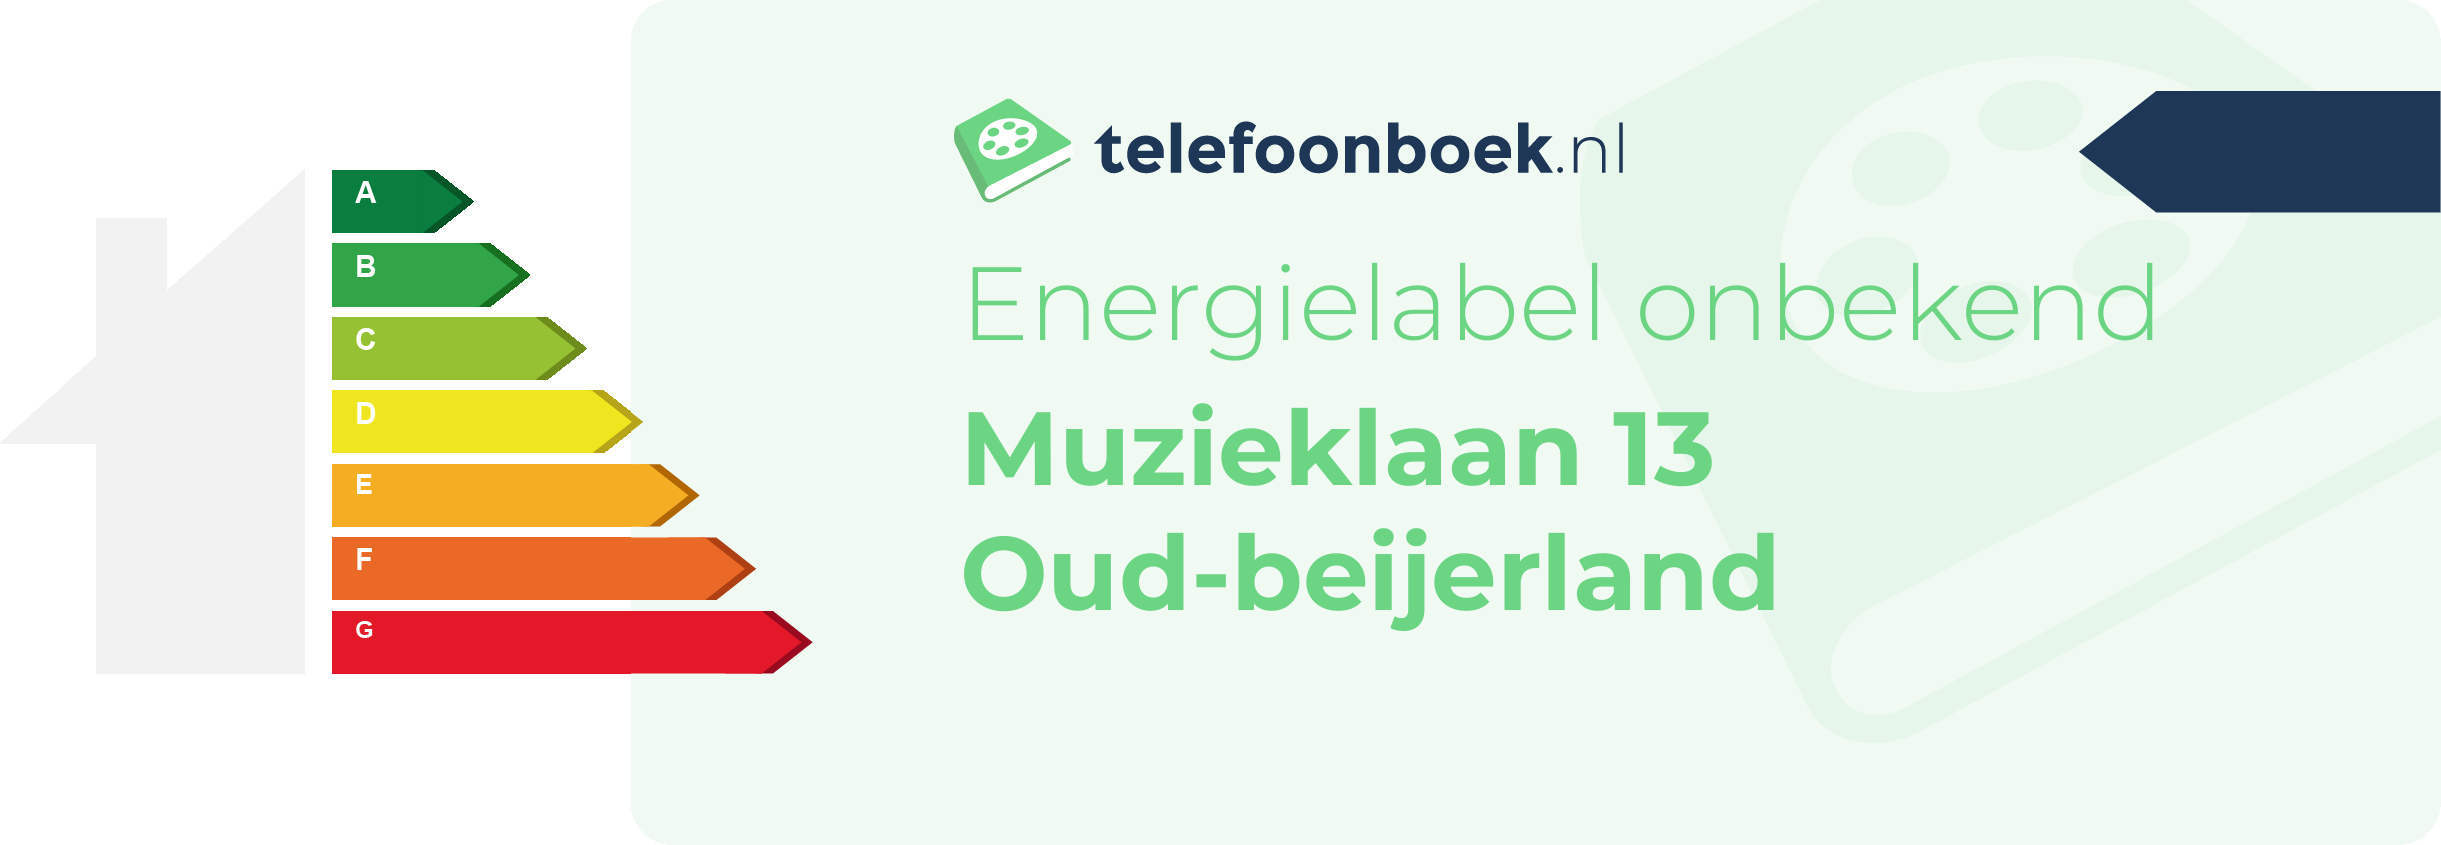 Energielabel Muzieklaan 13 Oud-Beijerland